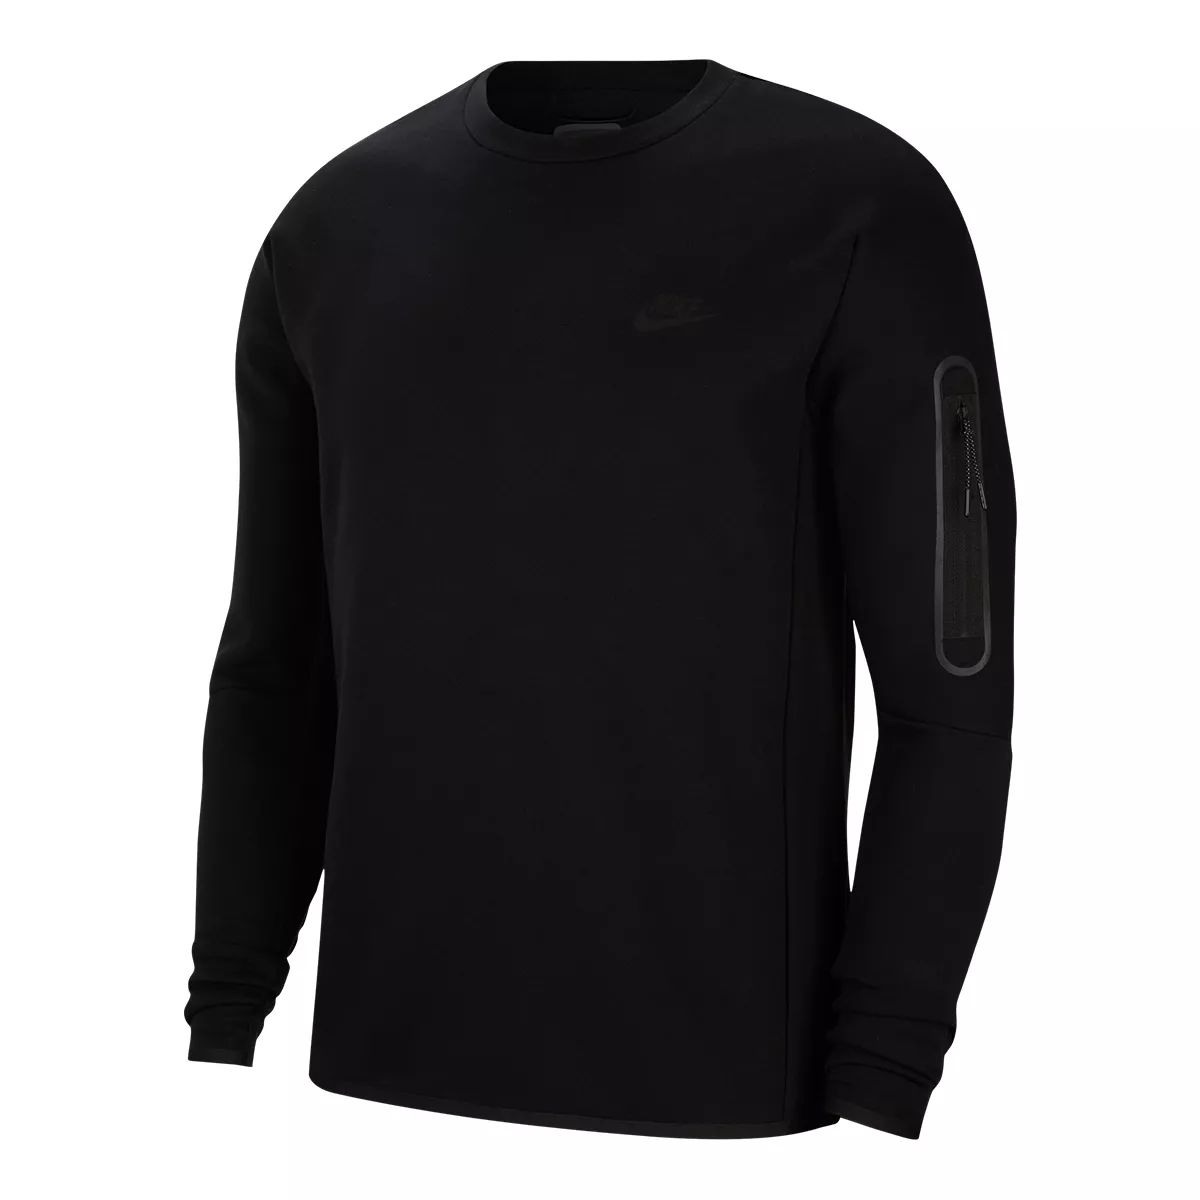 Nike Sportswear Men's Tech Fleece Sweatshirt